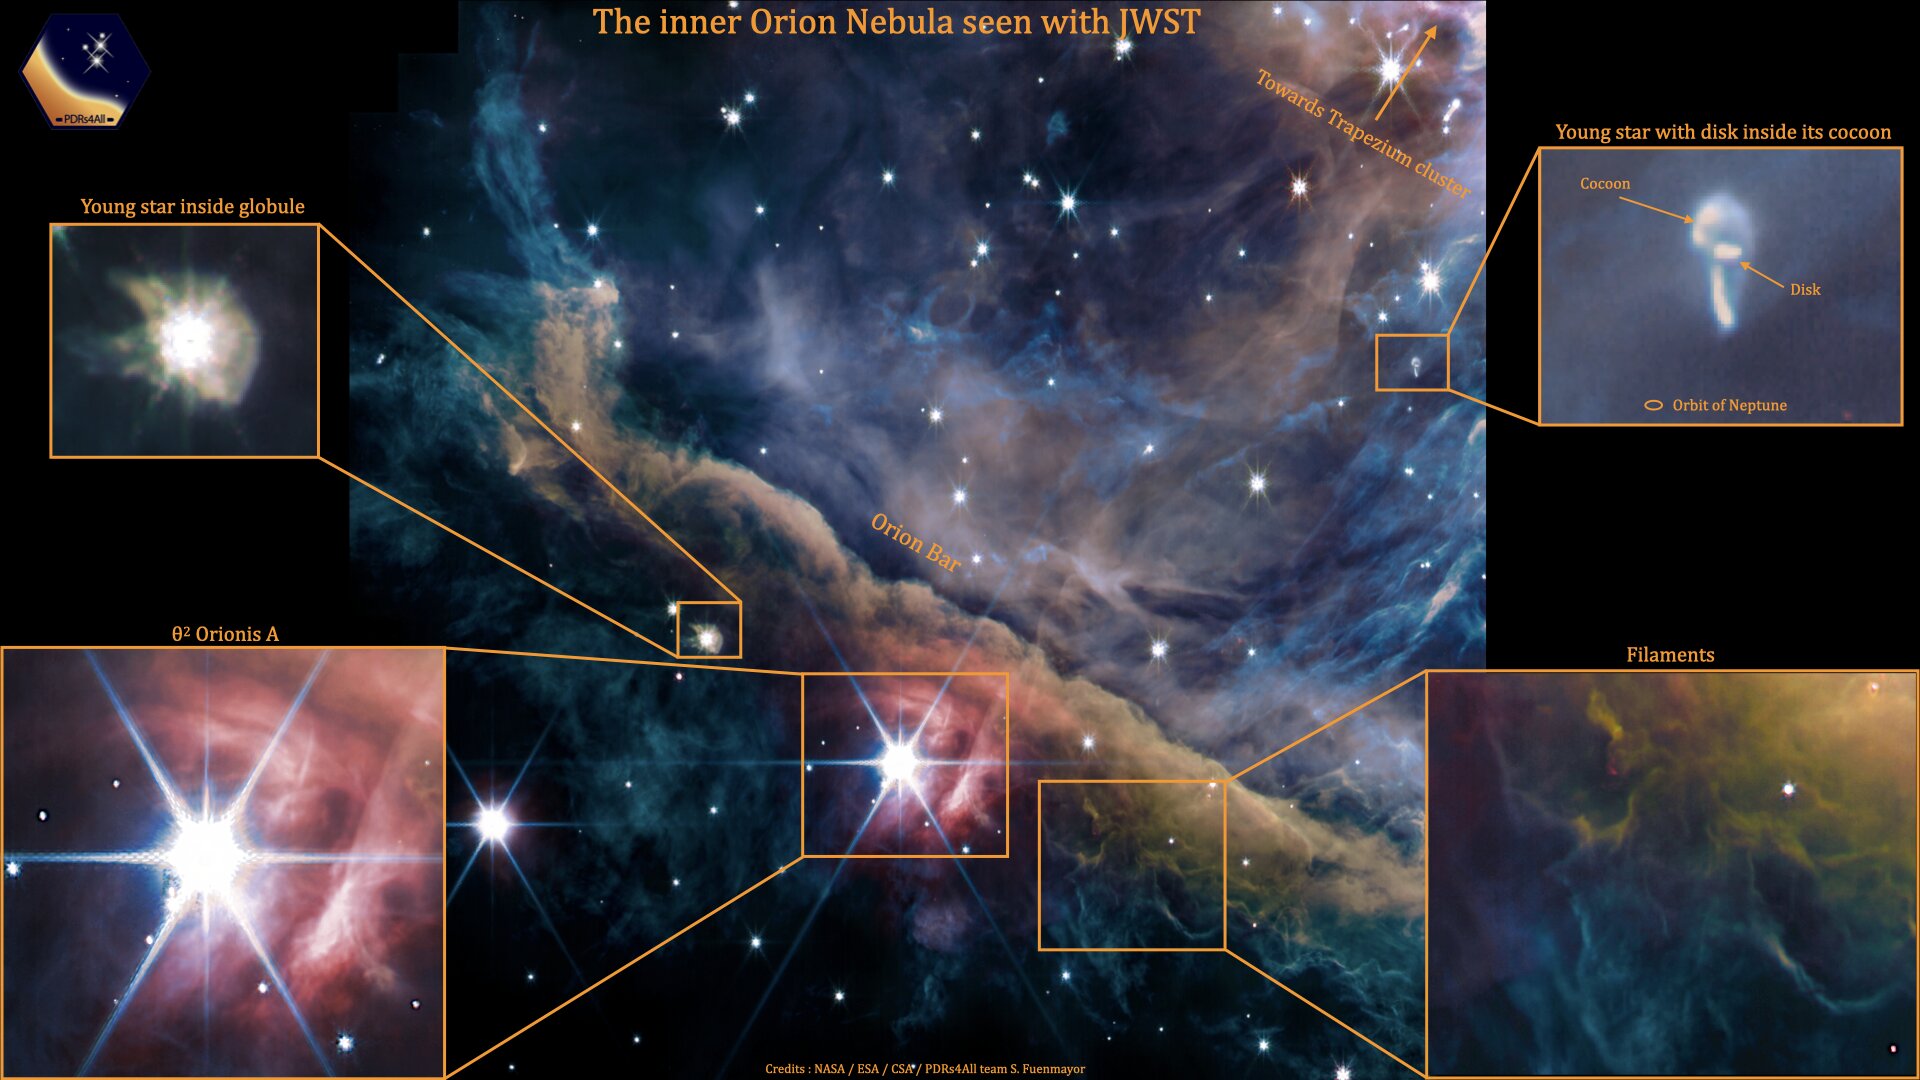 La nueva observación del Webb sobre Orión muestra una imagen compuesta de varios filtros que representa la emisión de gas ionizado, hidrocarburos, gas molecular, polvo y luz estelar dispersa (NASA)